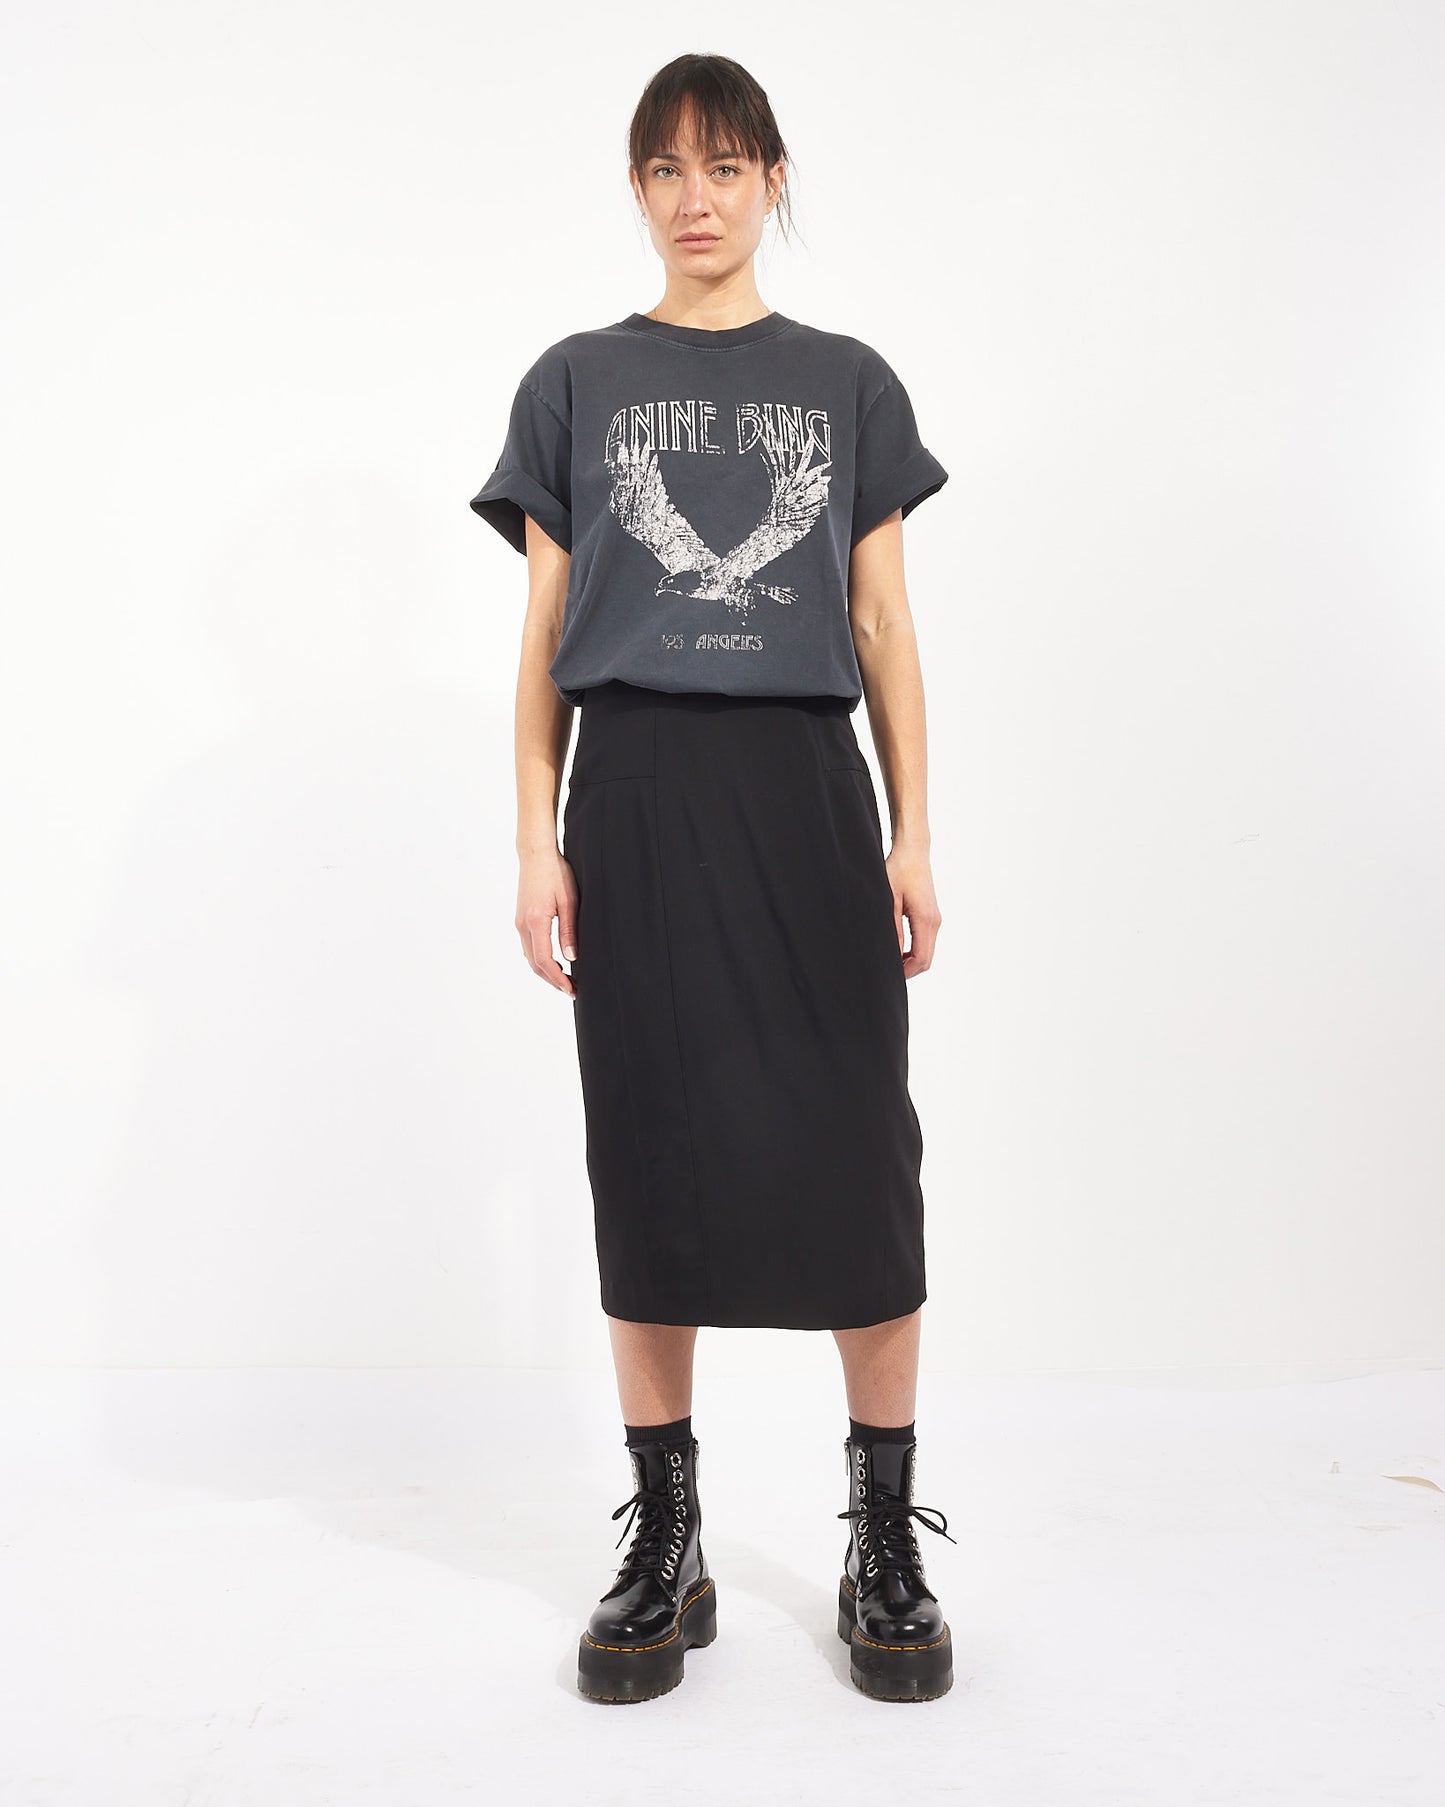 Anine Bing T-shirt Lili en coton noir - M